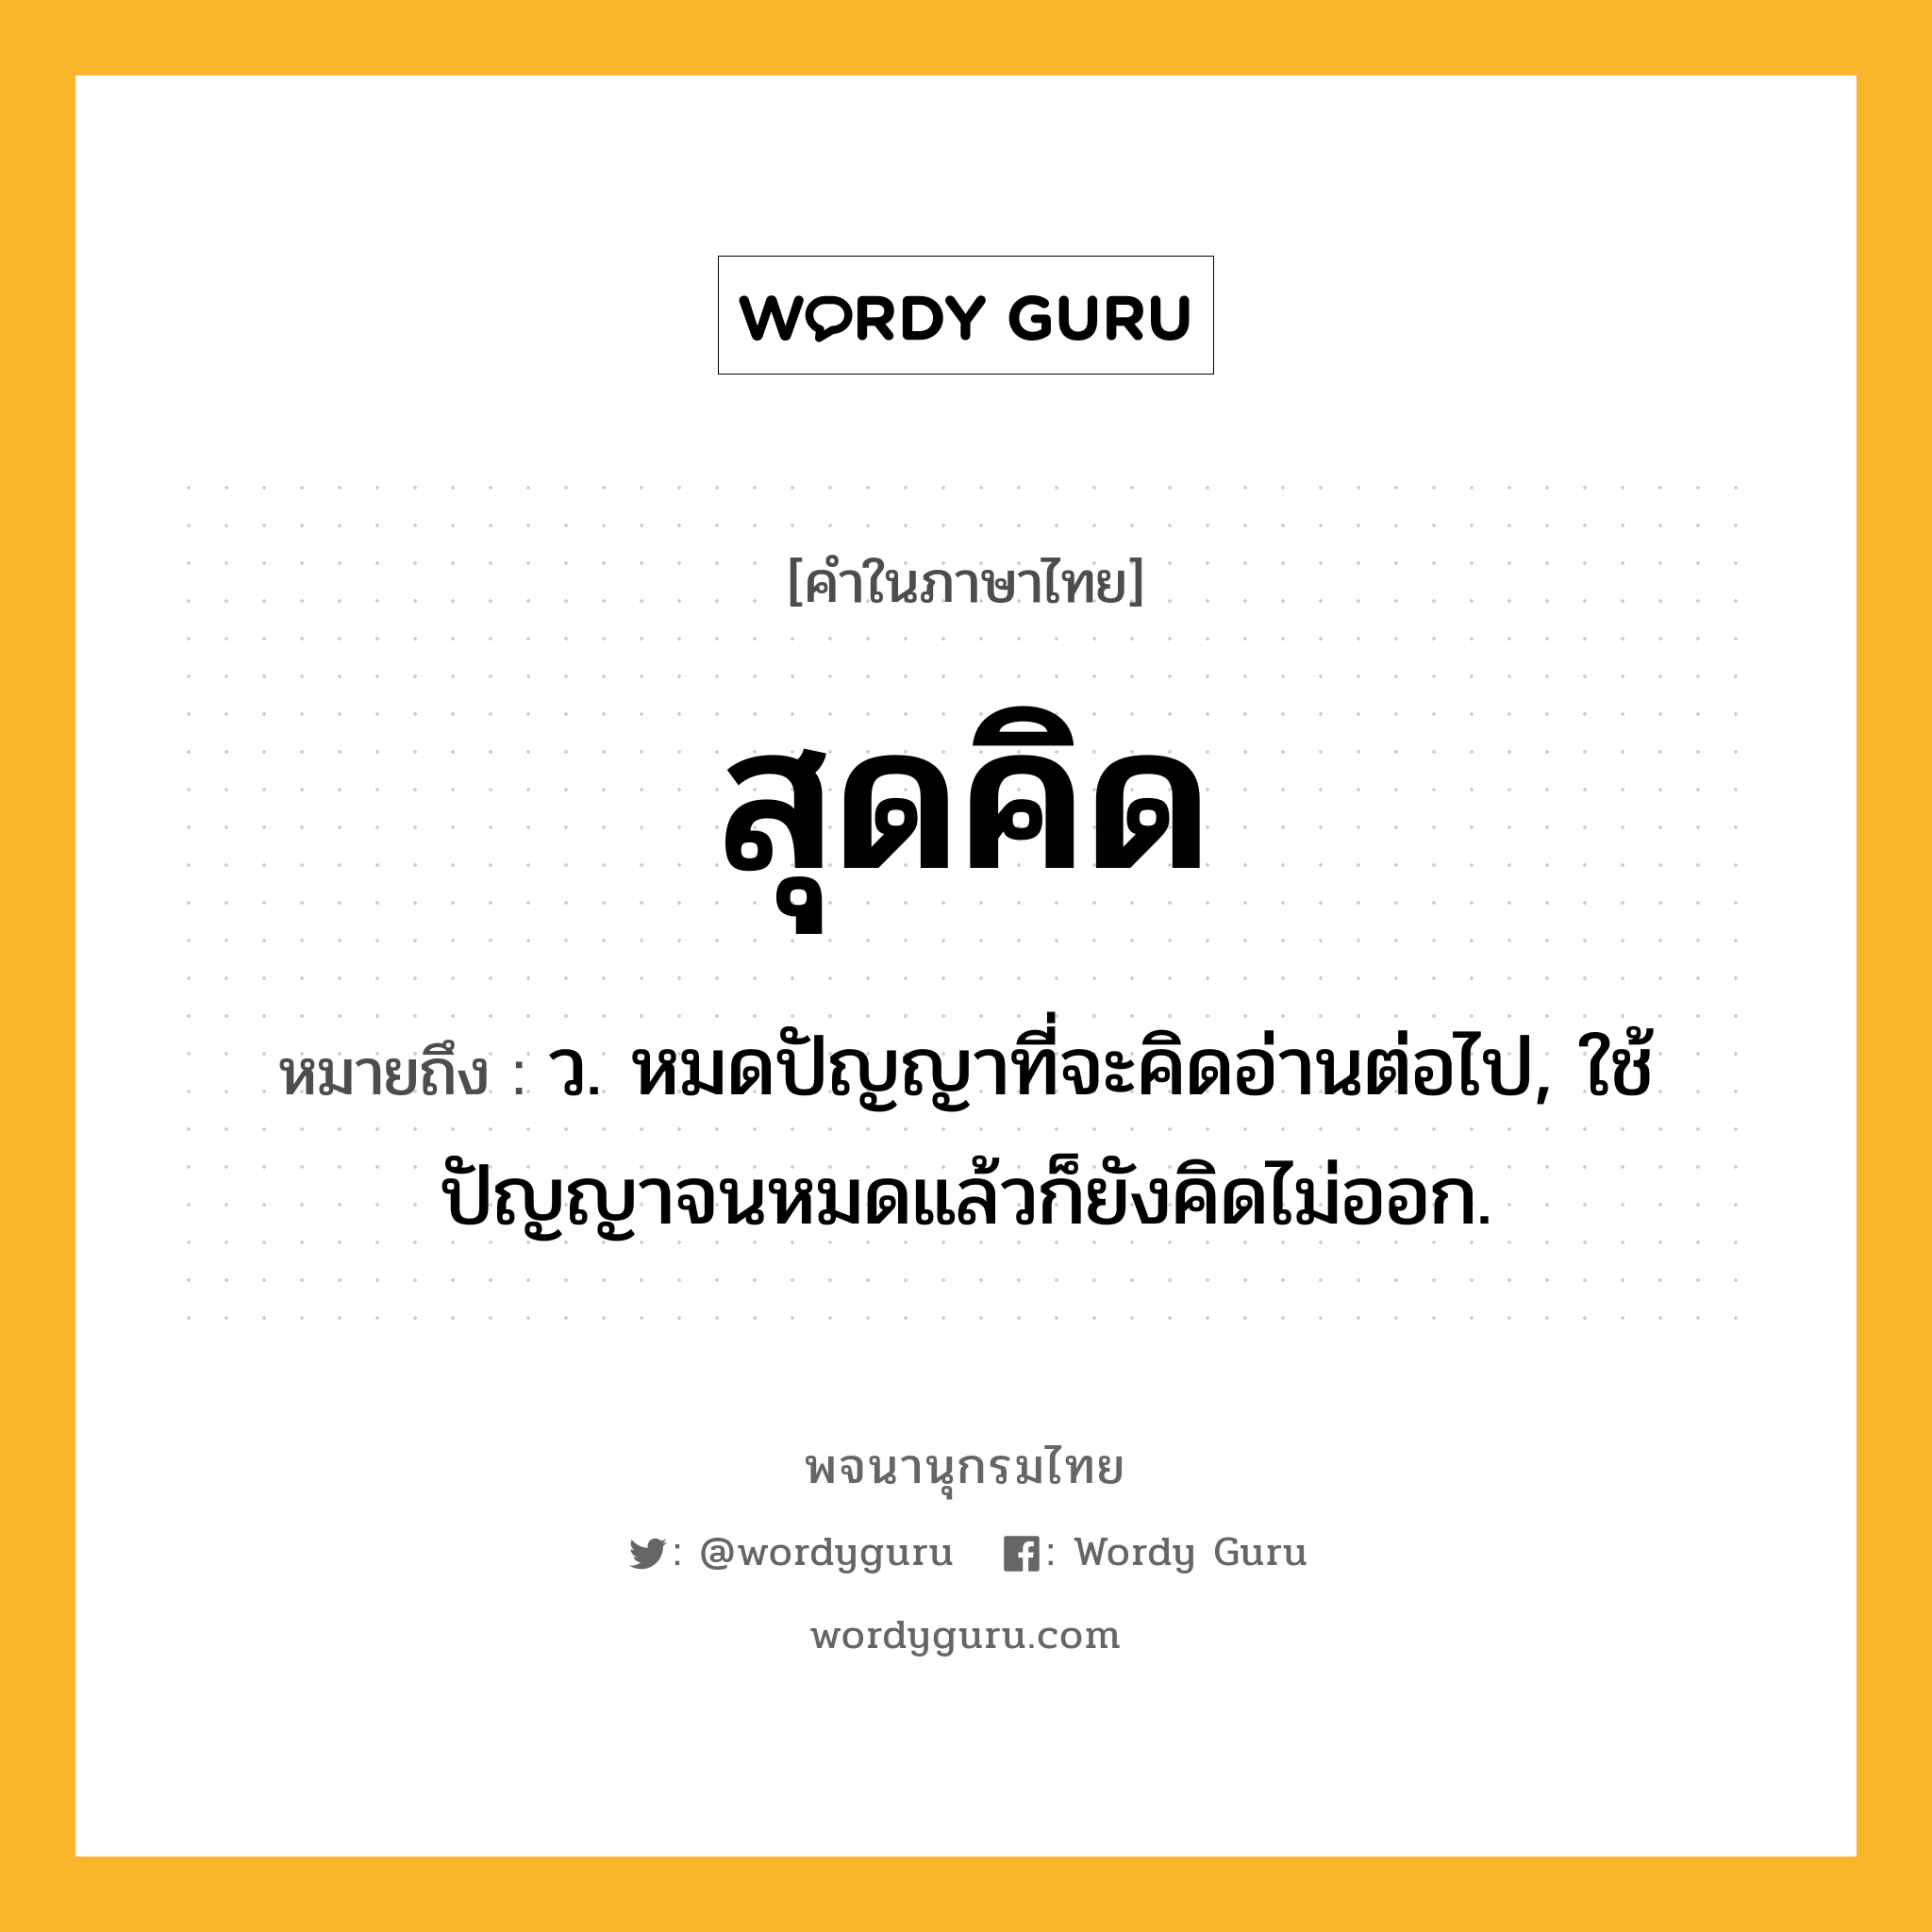 สุดคิด ความหมาย หมายถึงอะไร?, คำในภาษาไทย สุดคิด หมายถึง ว. หมดปัญญาที่จะคิดอ่านต่อไป, ใช้ปัญญาจนหมดแล้วก็ยังคิดไม่ออก.